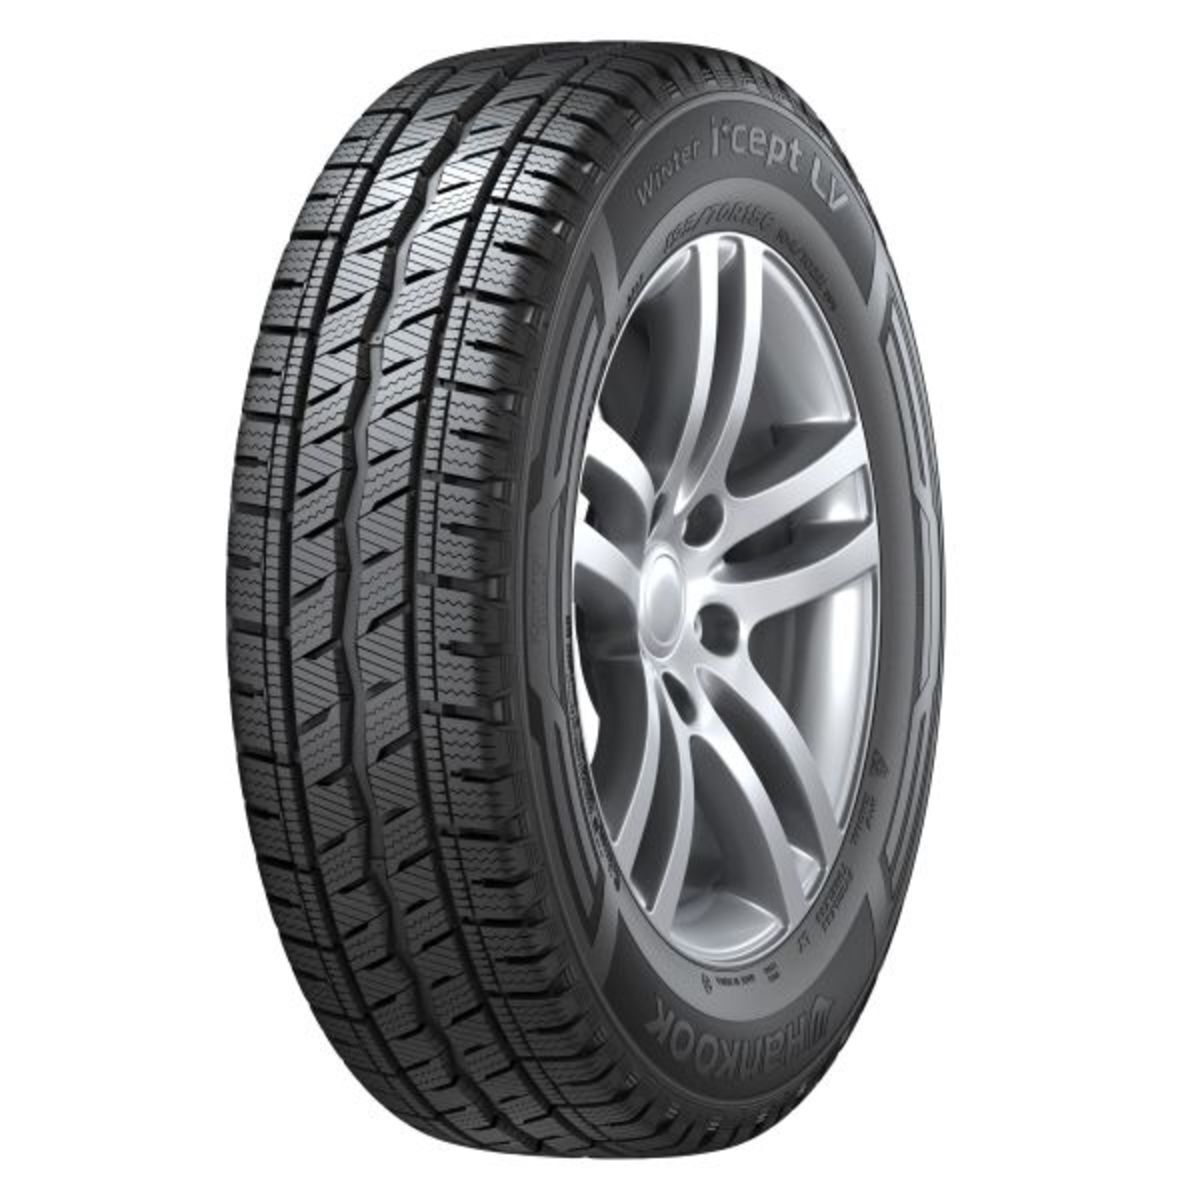 Neumáticos de invierno HANKOOK Winter I*cept LV RW12 225/55R17C, 109/107R TL